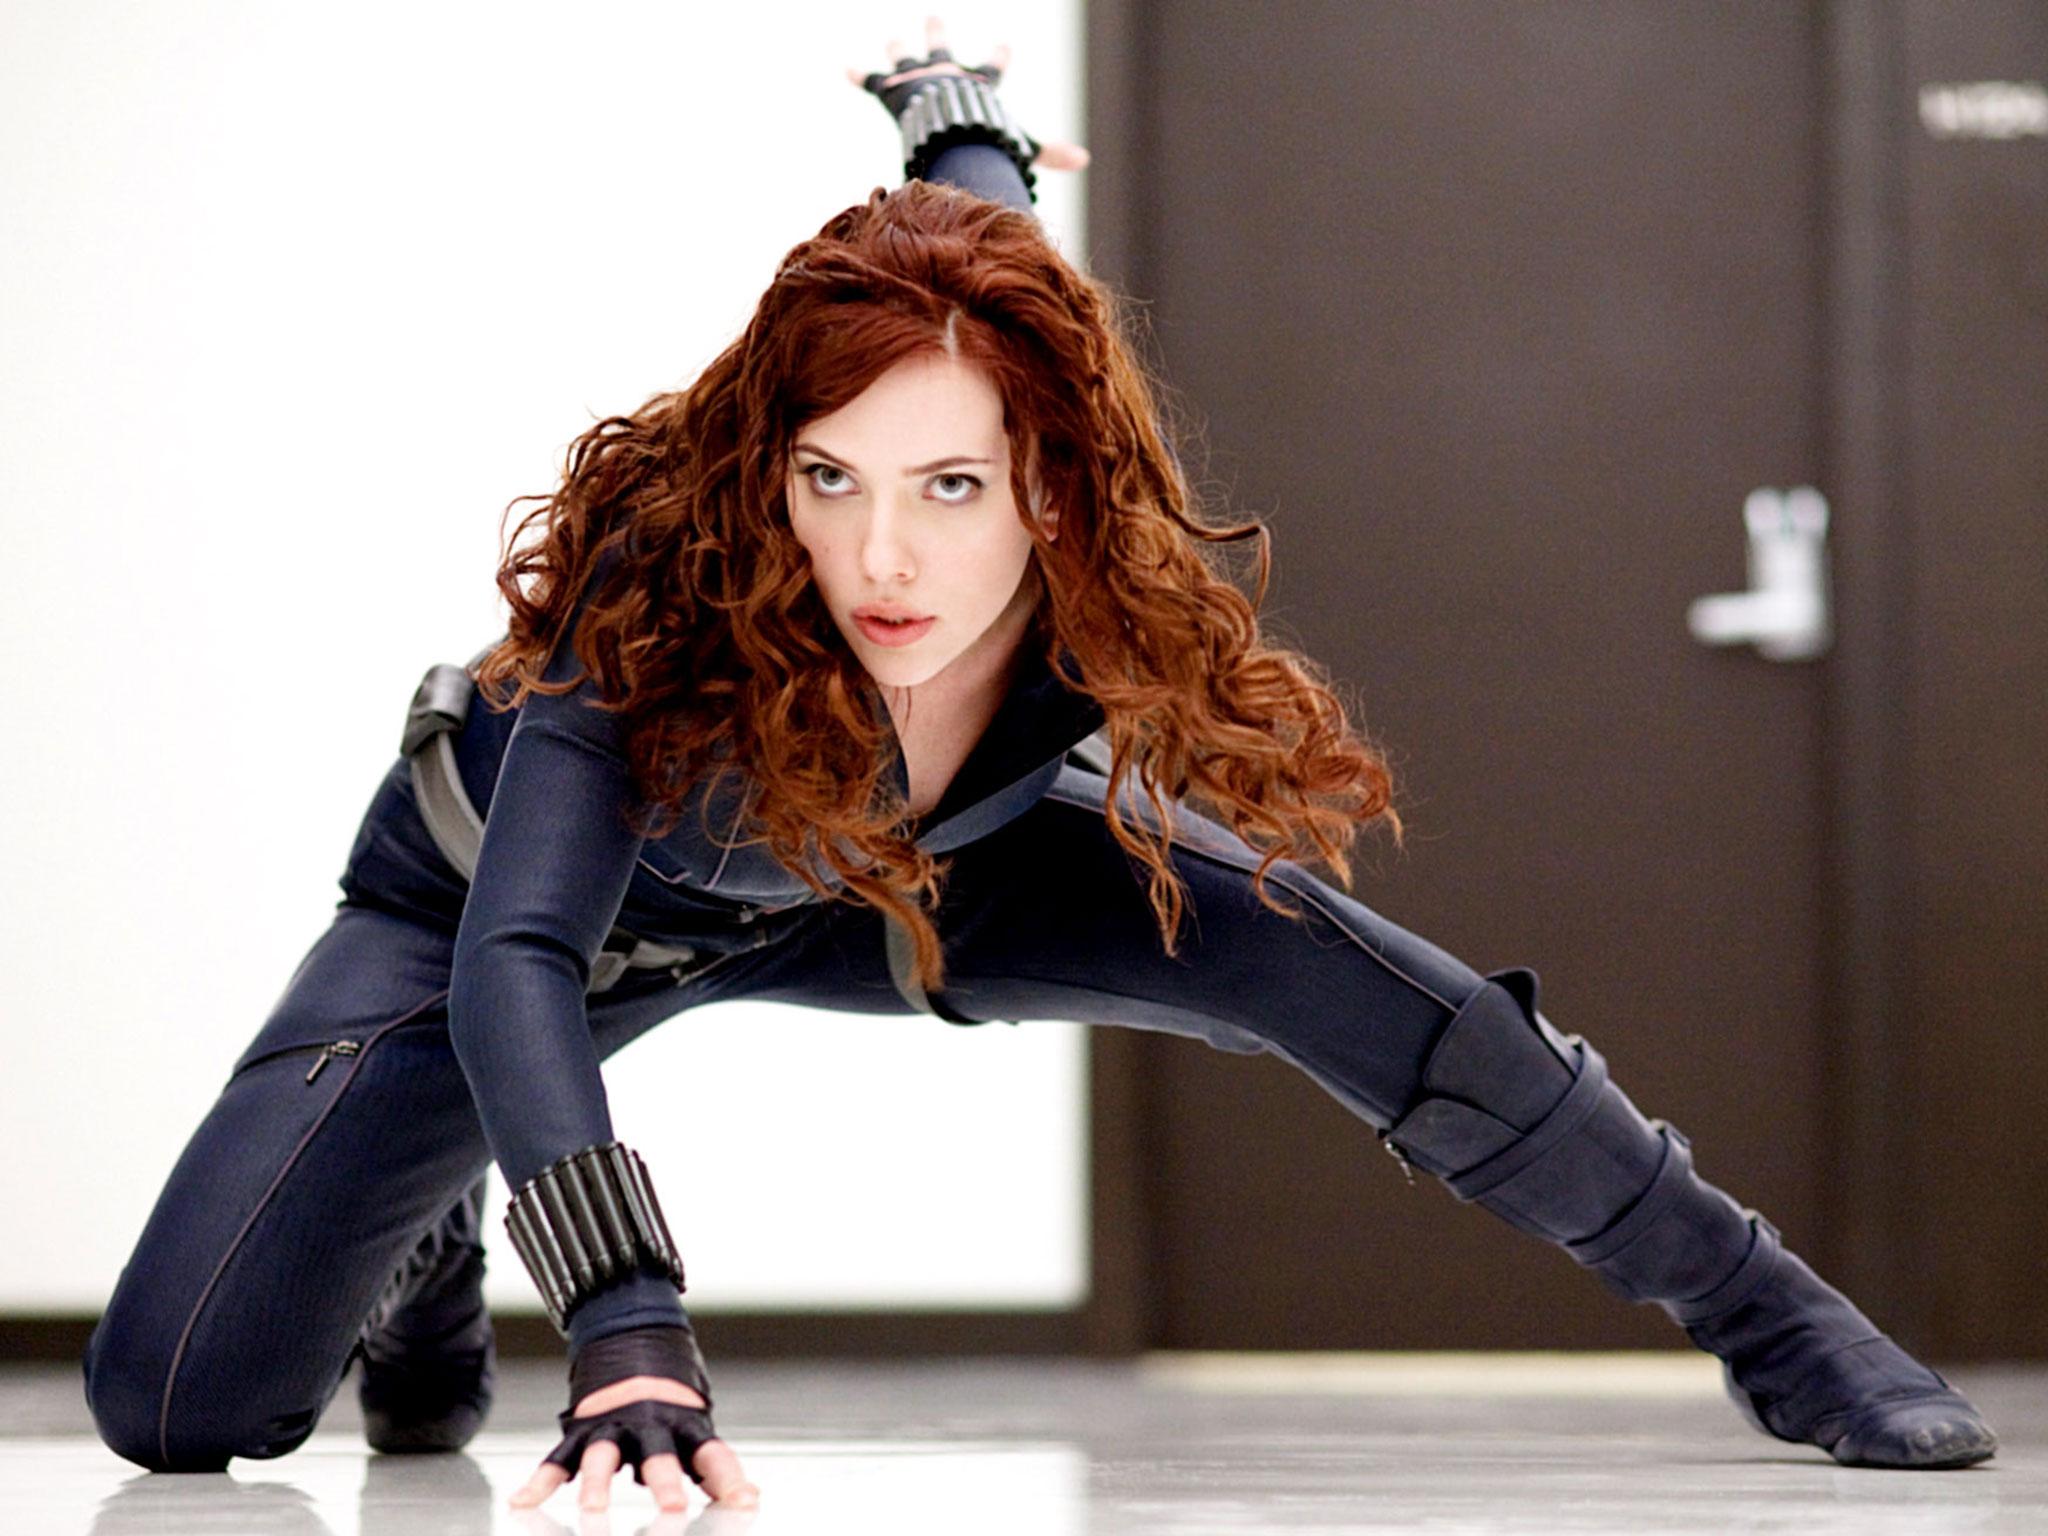 Scarlett Johansson as the Black Widow